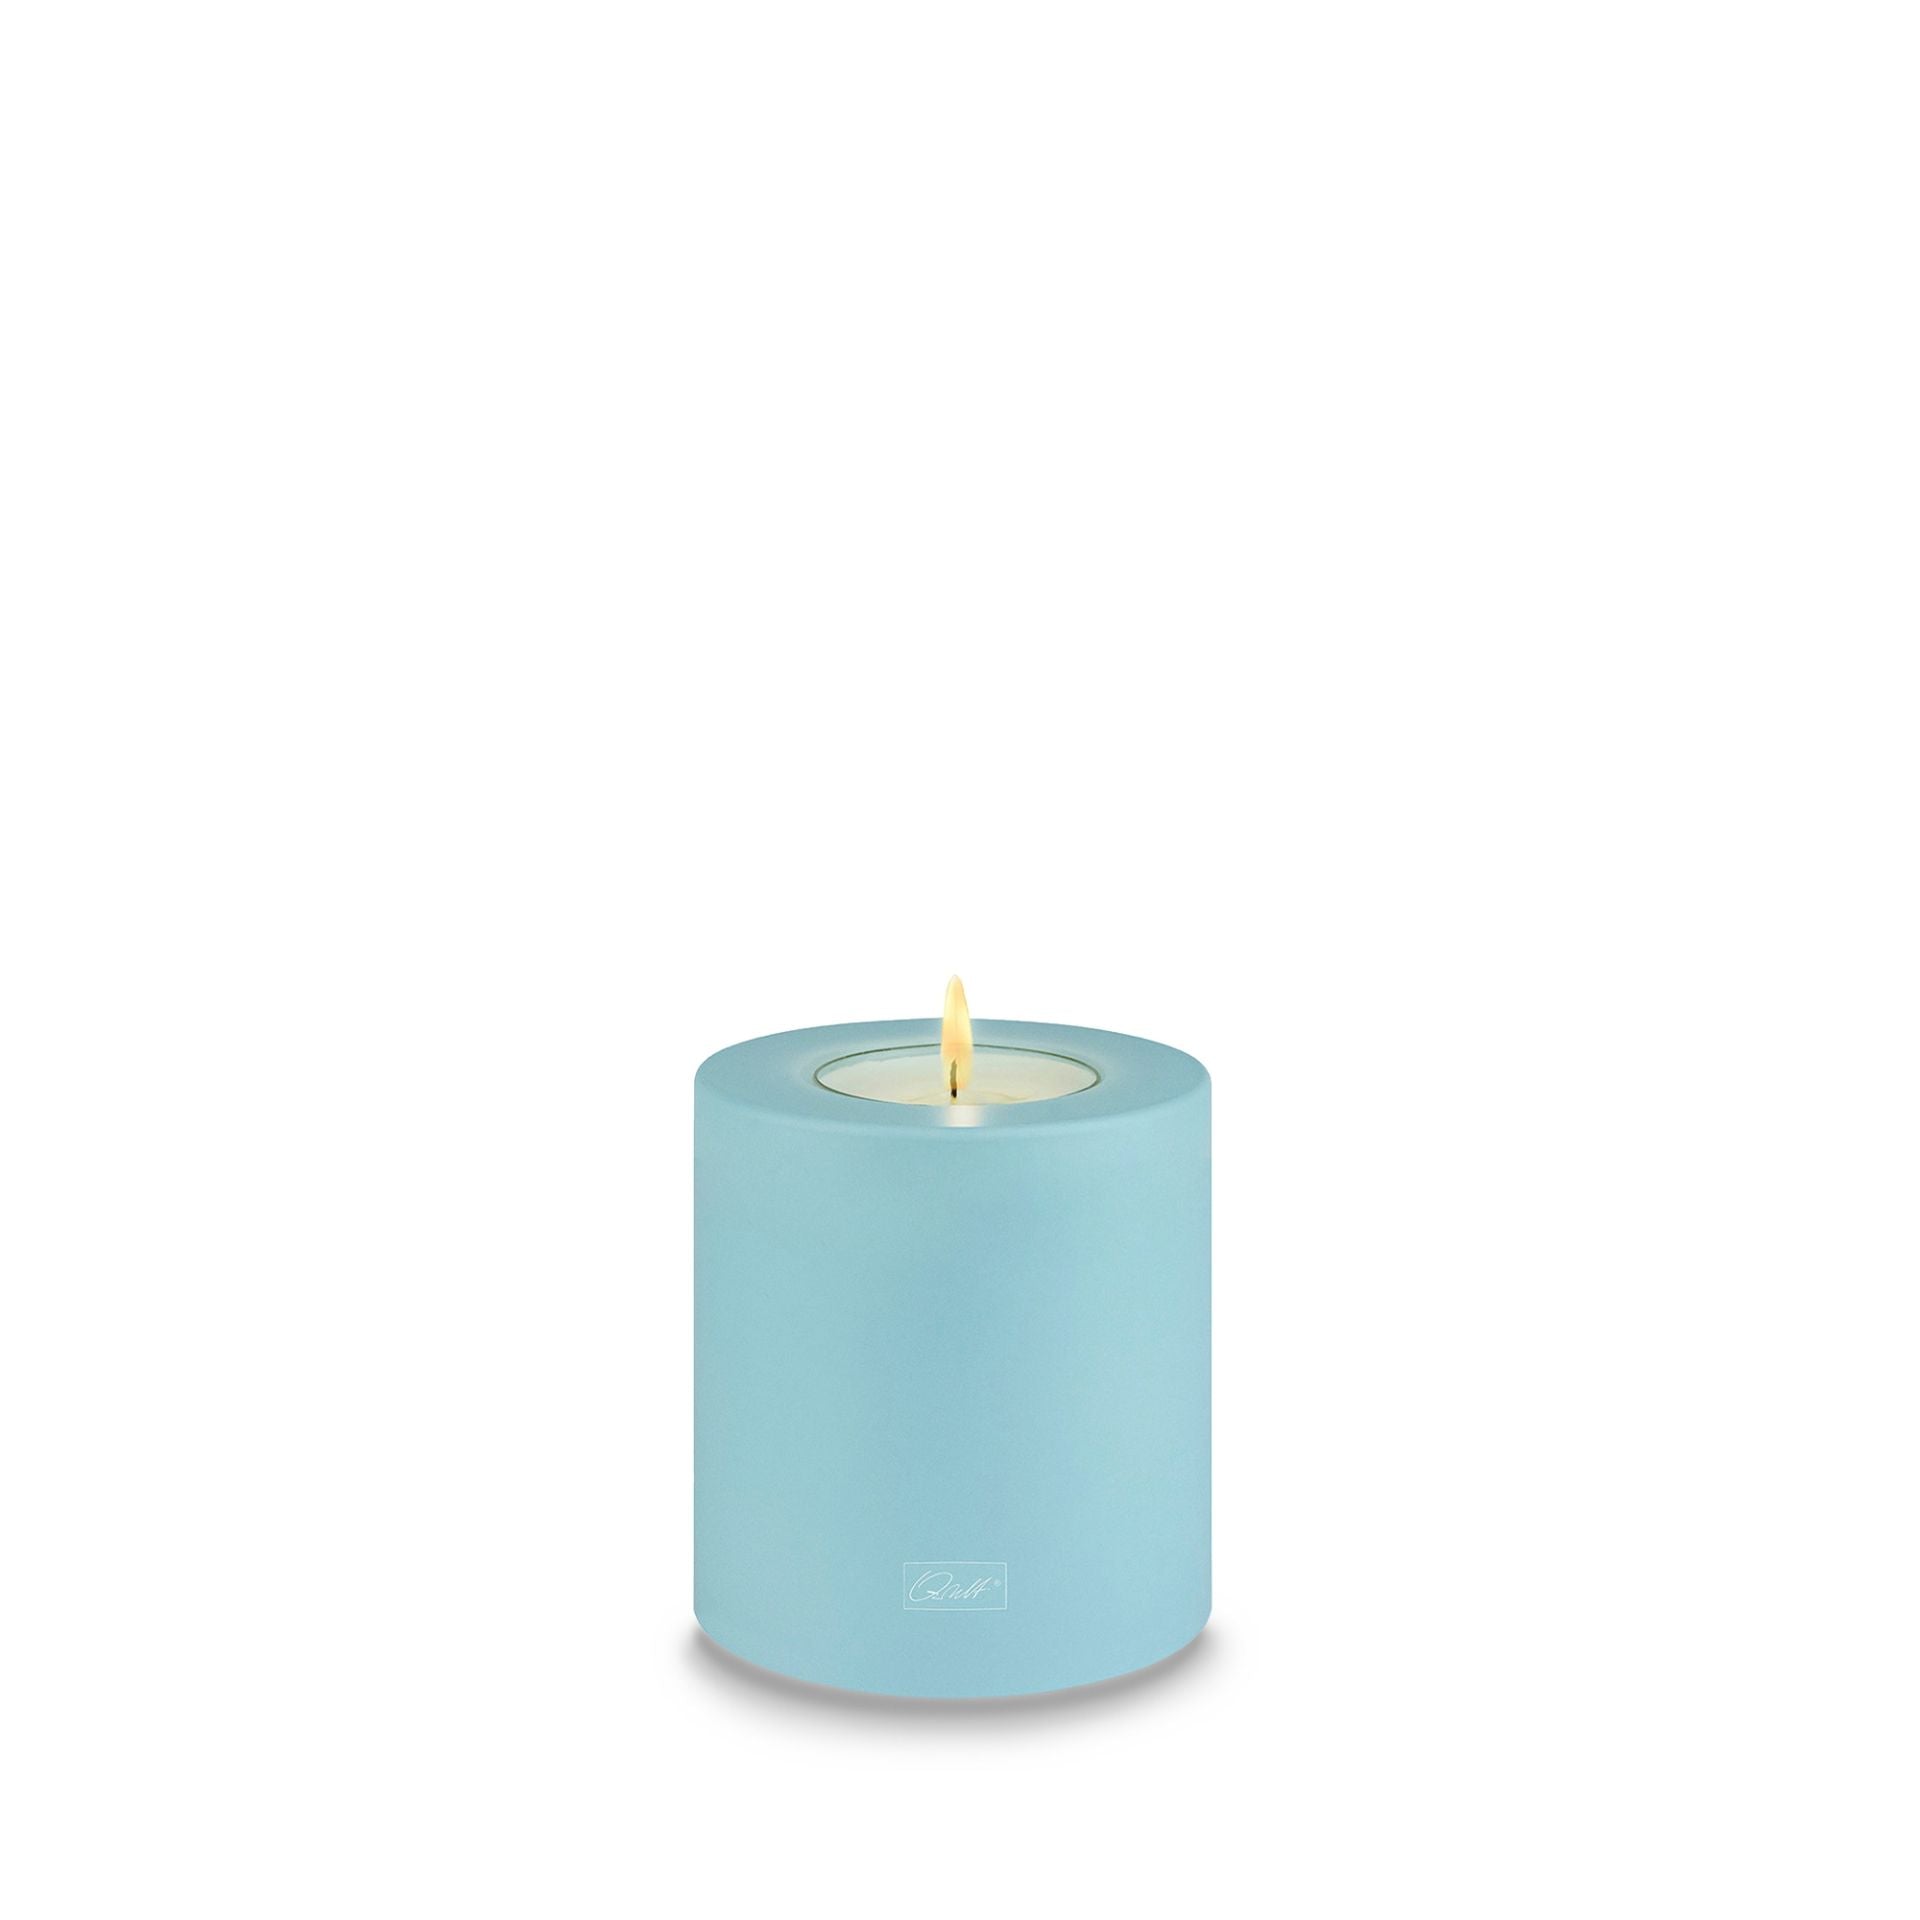 Qult Trend Teelichthalter in Kerzenform Color Ø 8 cm